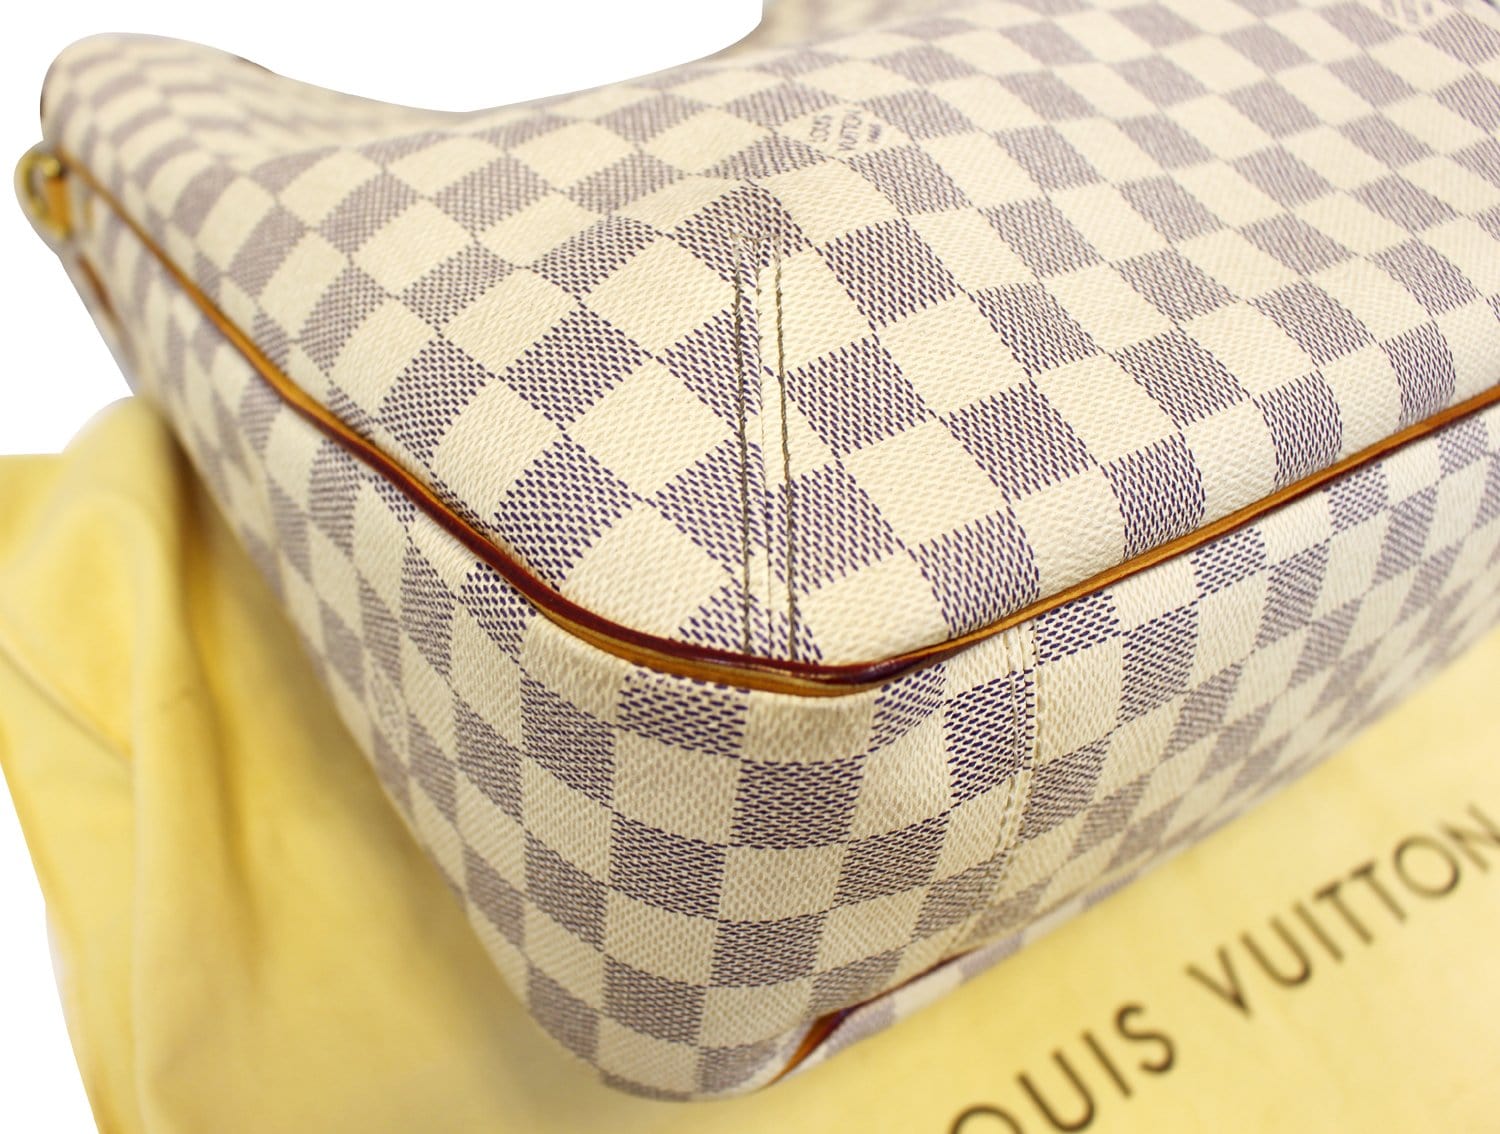 Authentic Louis Vuitton Damier Azur Soffi Shoulder Tote Handbag